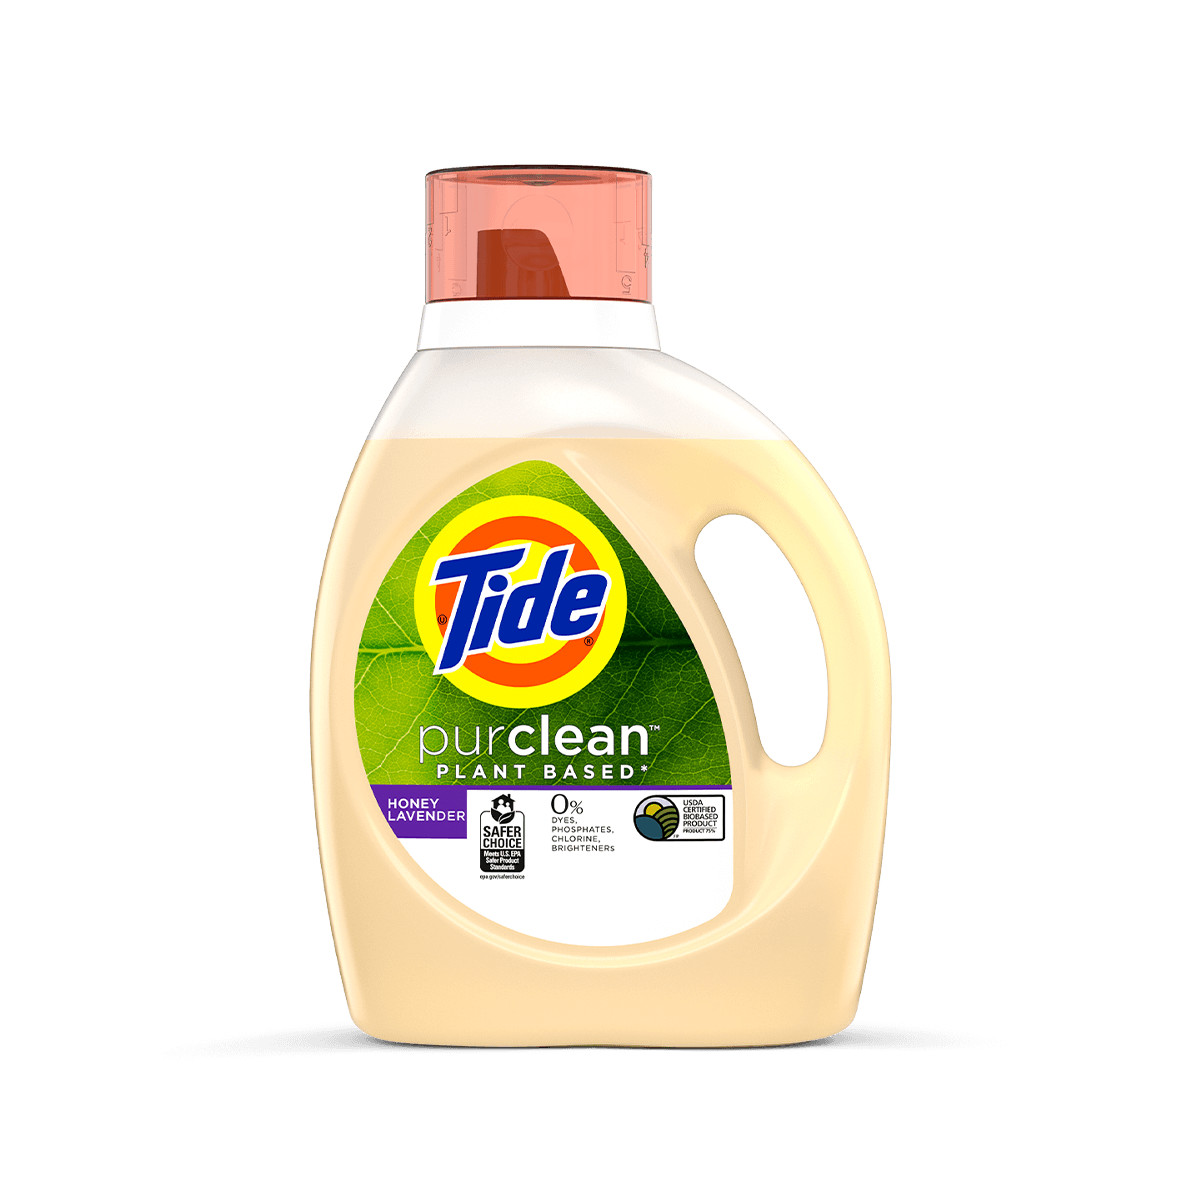 EcoTiras de detergente 40 lavados Sin fragancia - Envios gratis con Pangea  Ecotienda